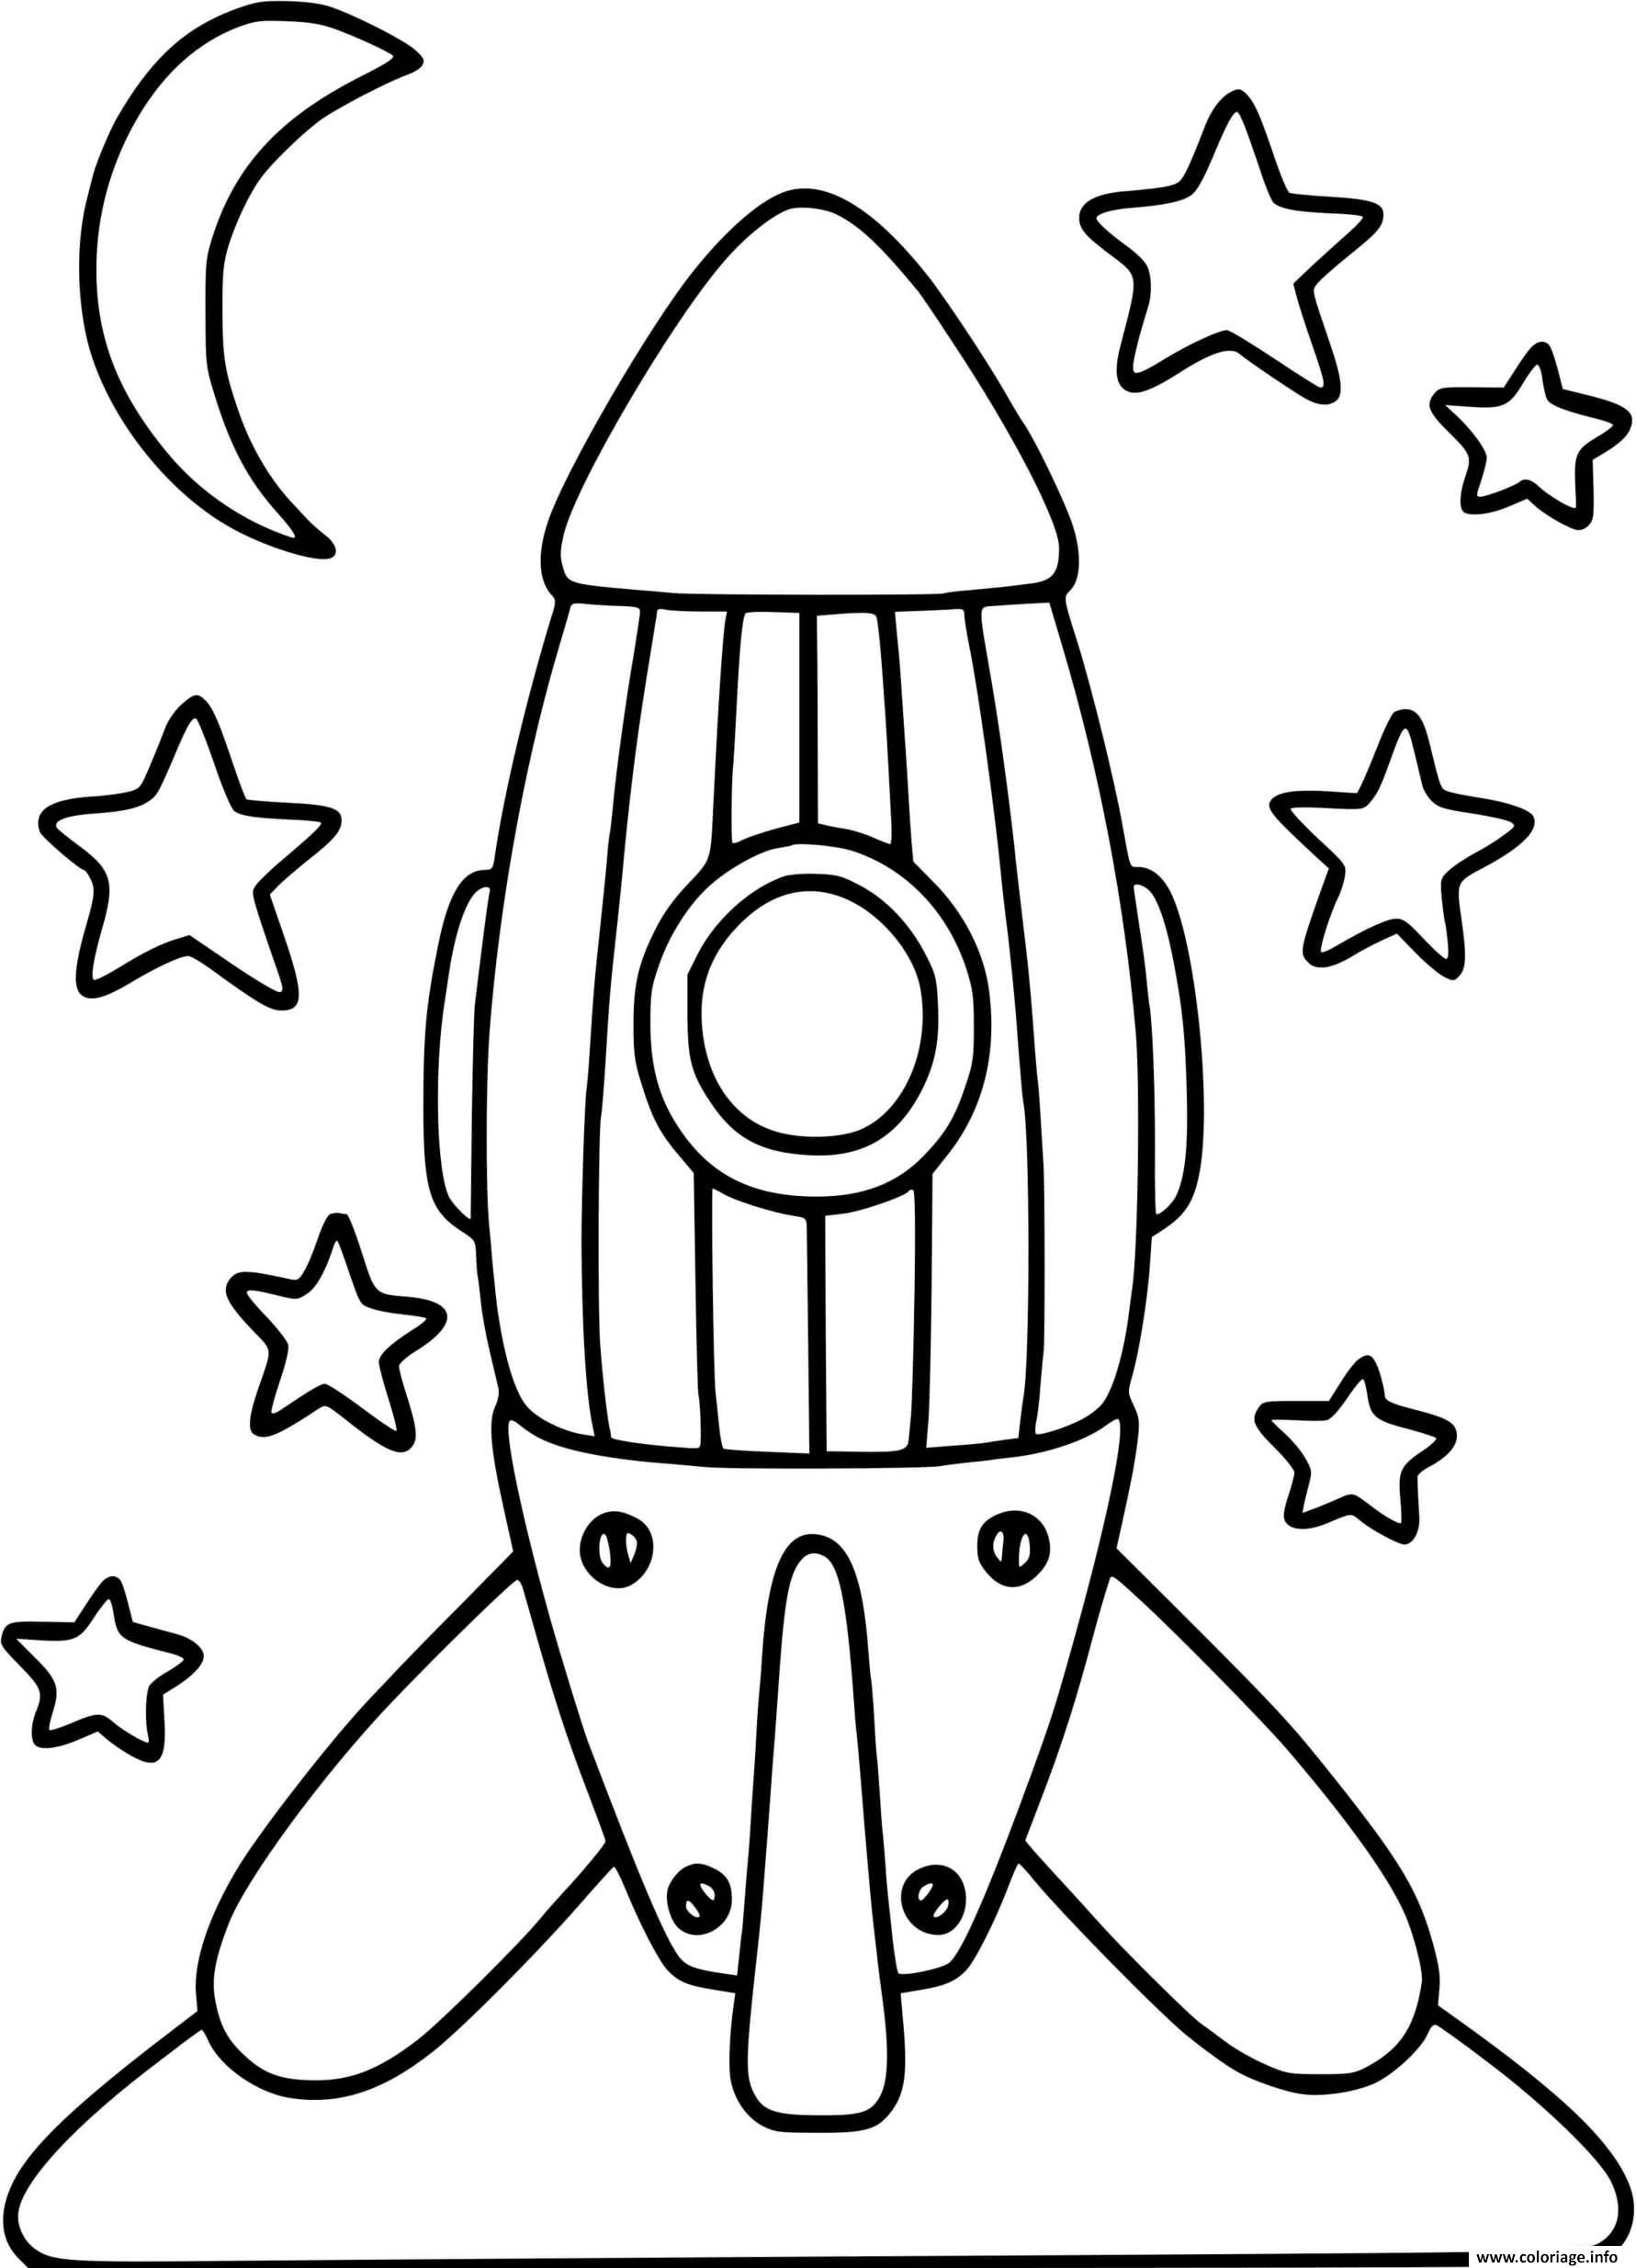 Трафареты ко дню космонавтики. Ракета раскраска. Ракета раскраска для детей. Космическая ракета раскраска. Раскраска ракета в космосе для детей.